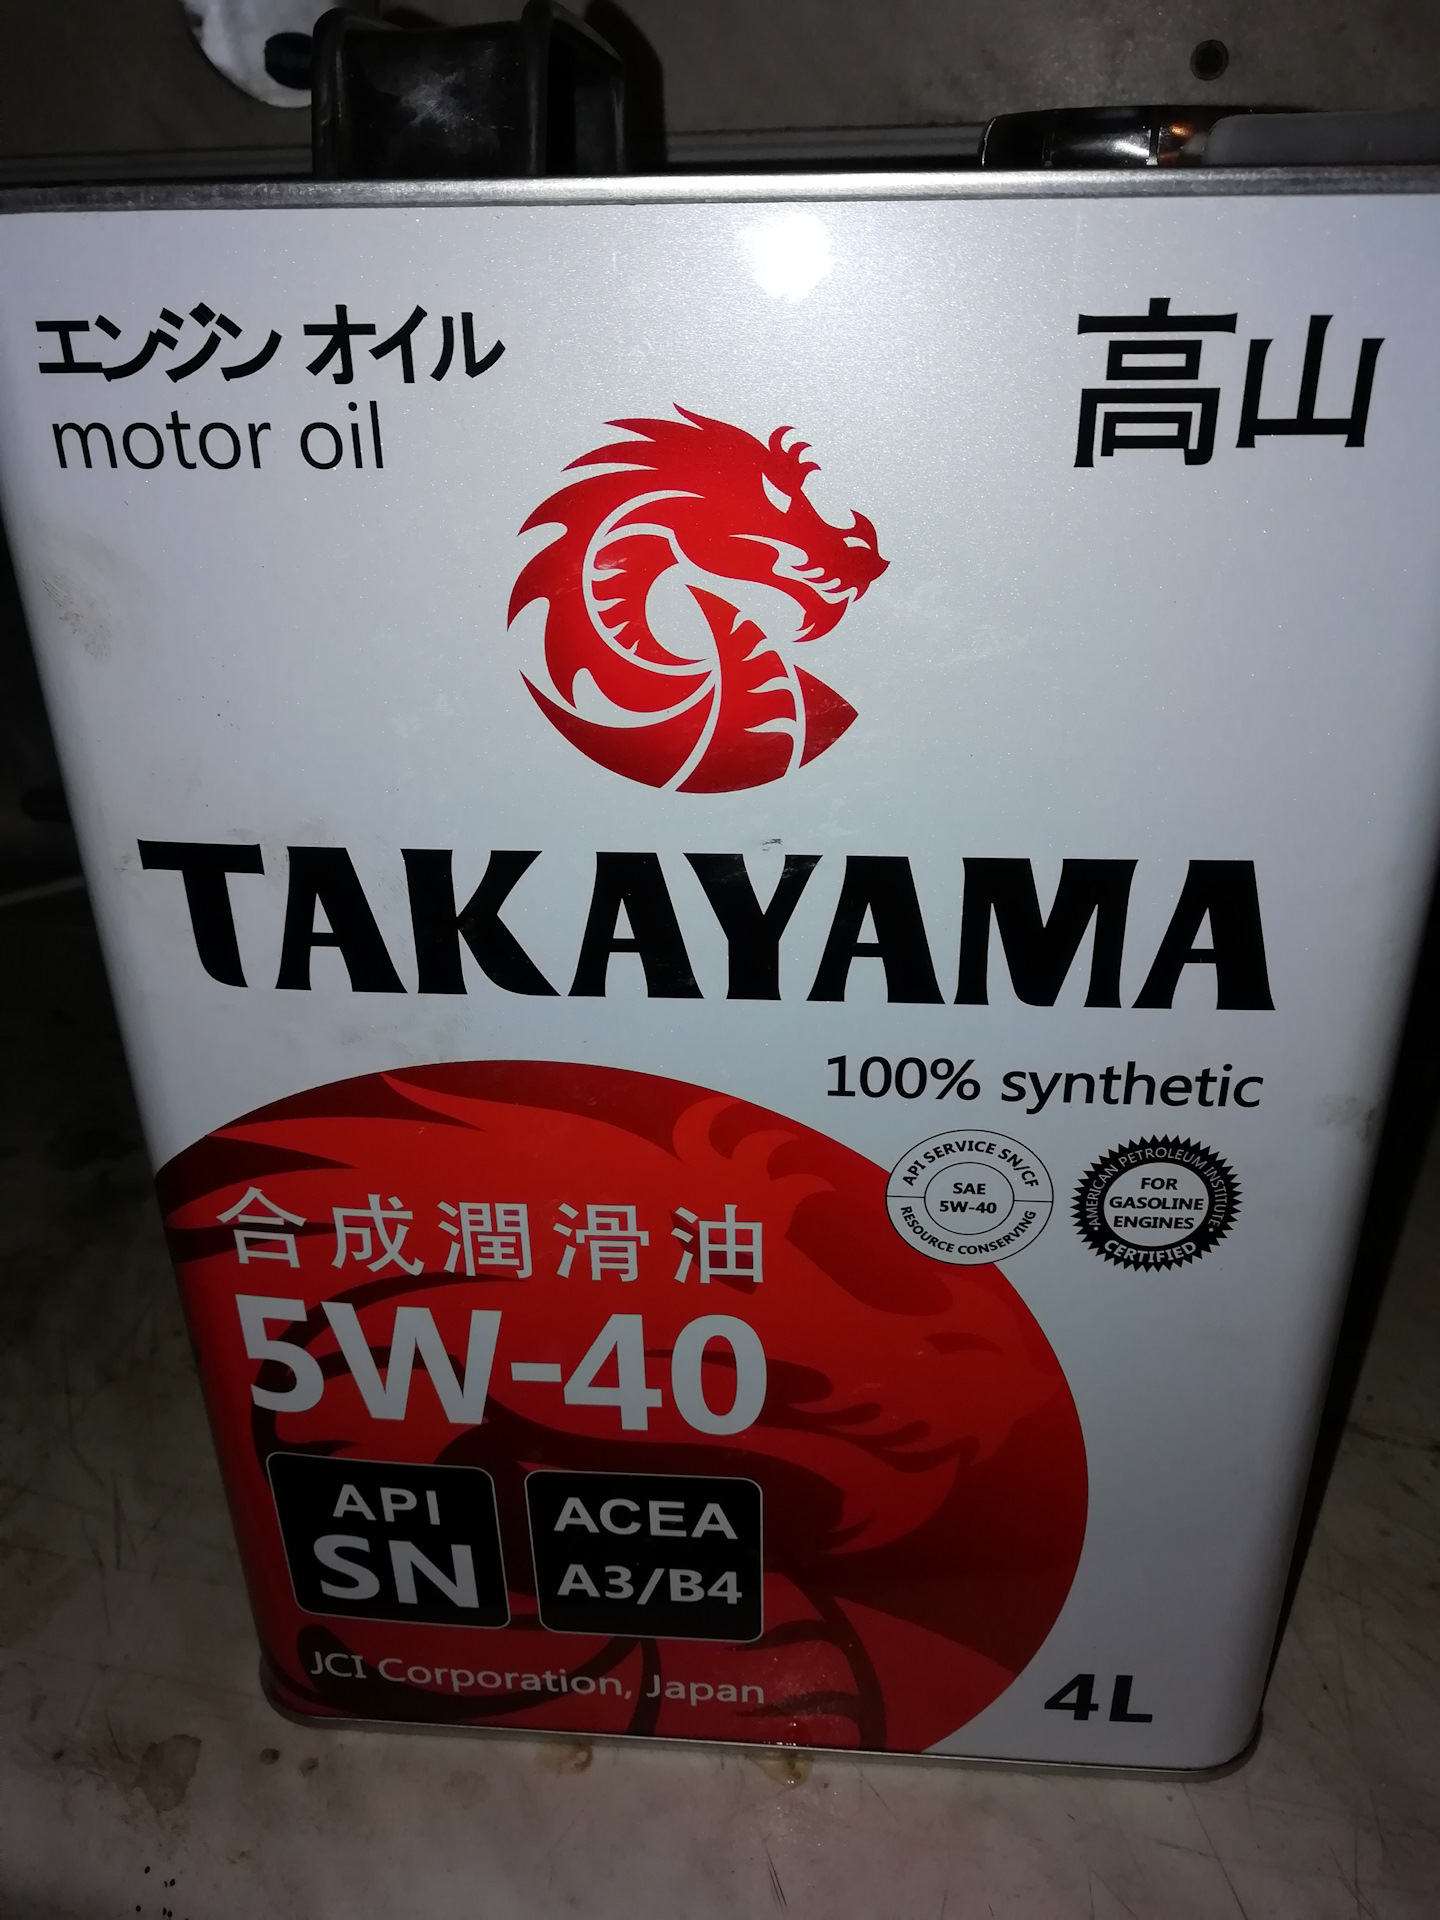 Японское масло 5w40. Моторное масло Такаяма 5w40. Моторное масло Takayama 5w-40. Японское масло 5w40 Такаяма. Масло Такаяма 5w40 производитель.